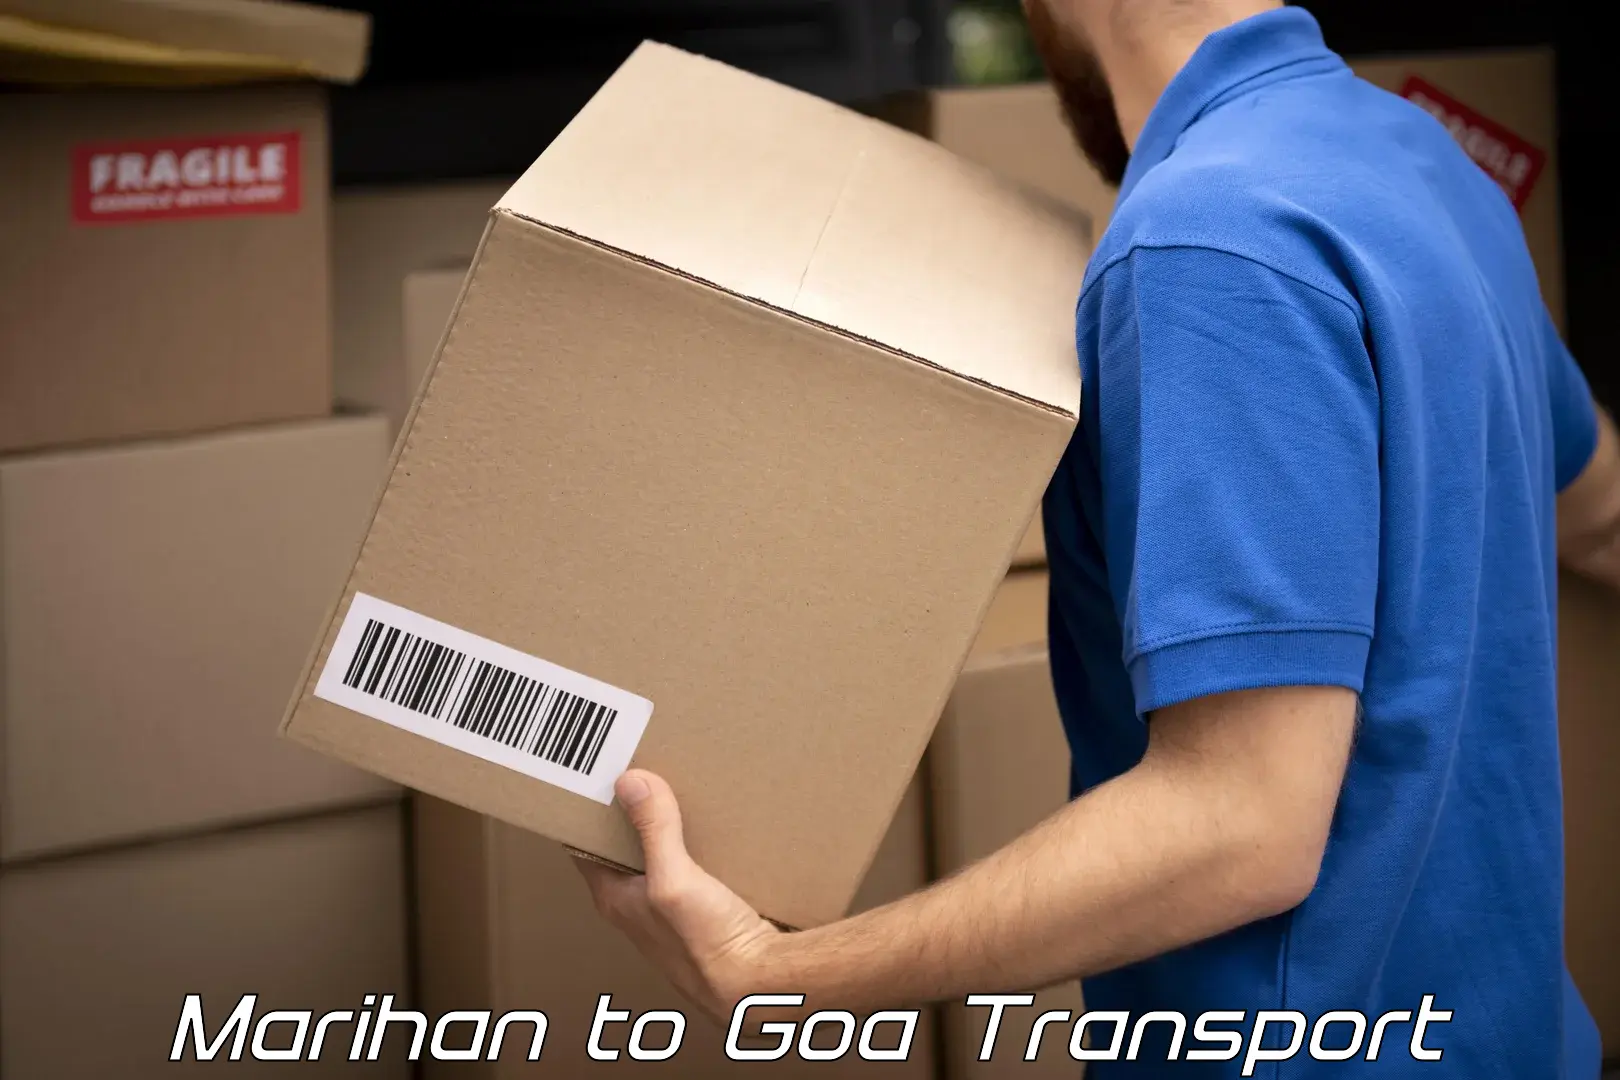 Pick up transport service Marihan to Goa